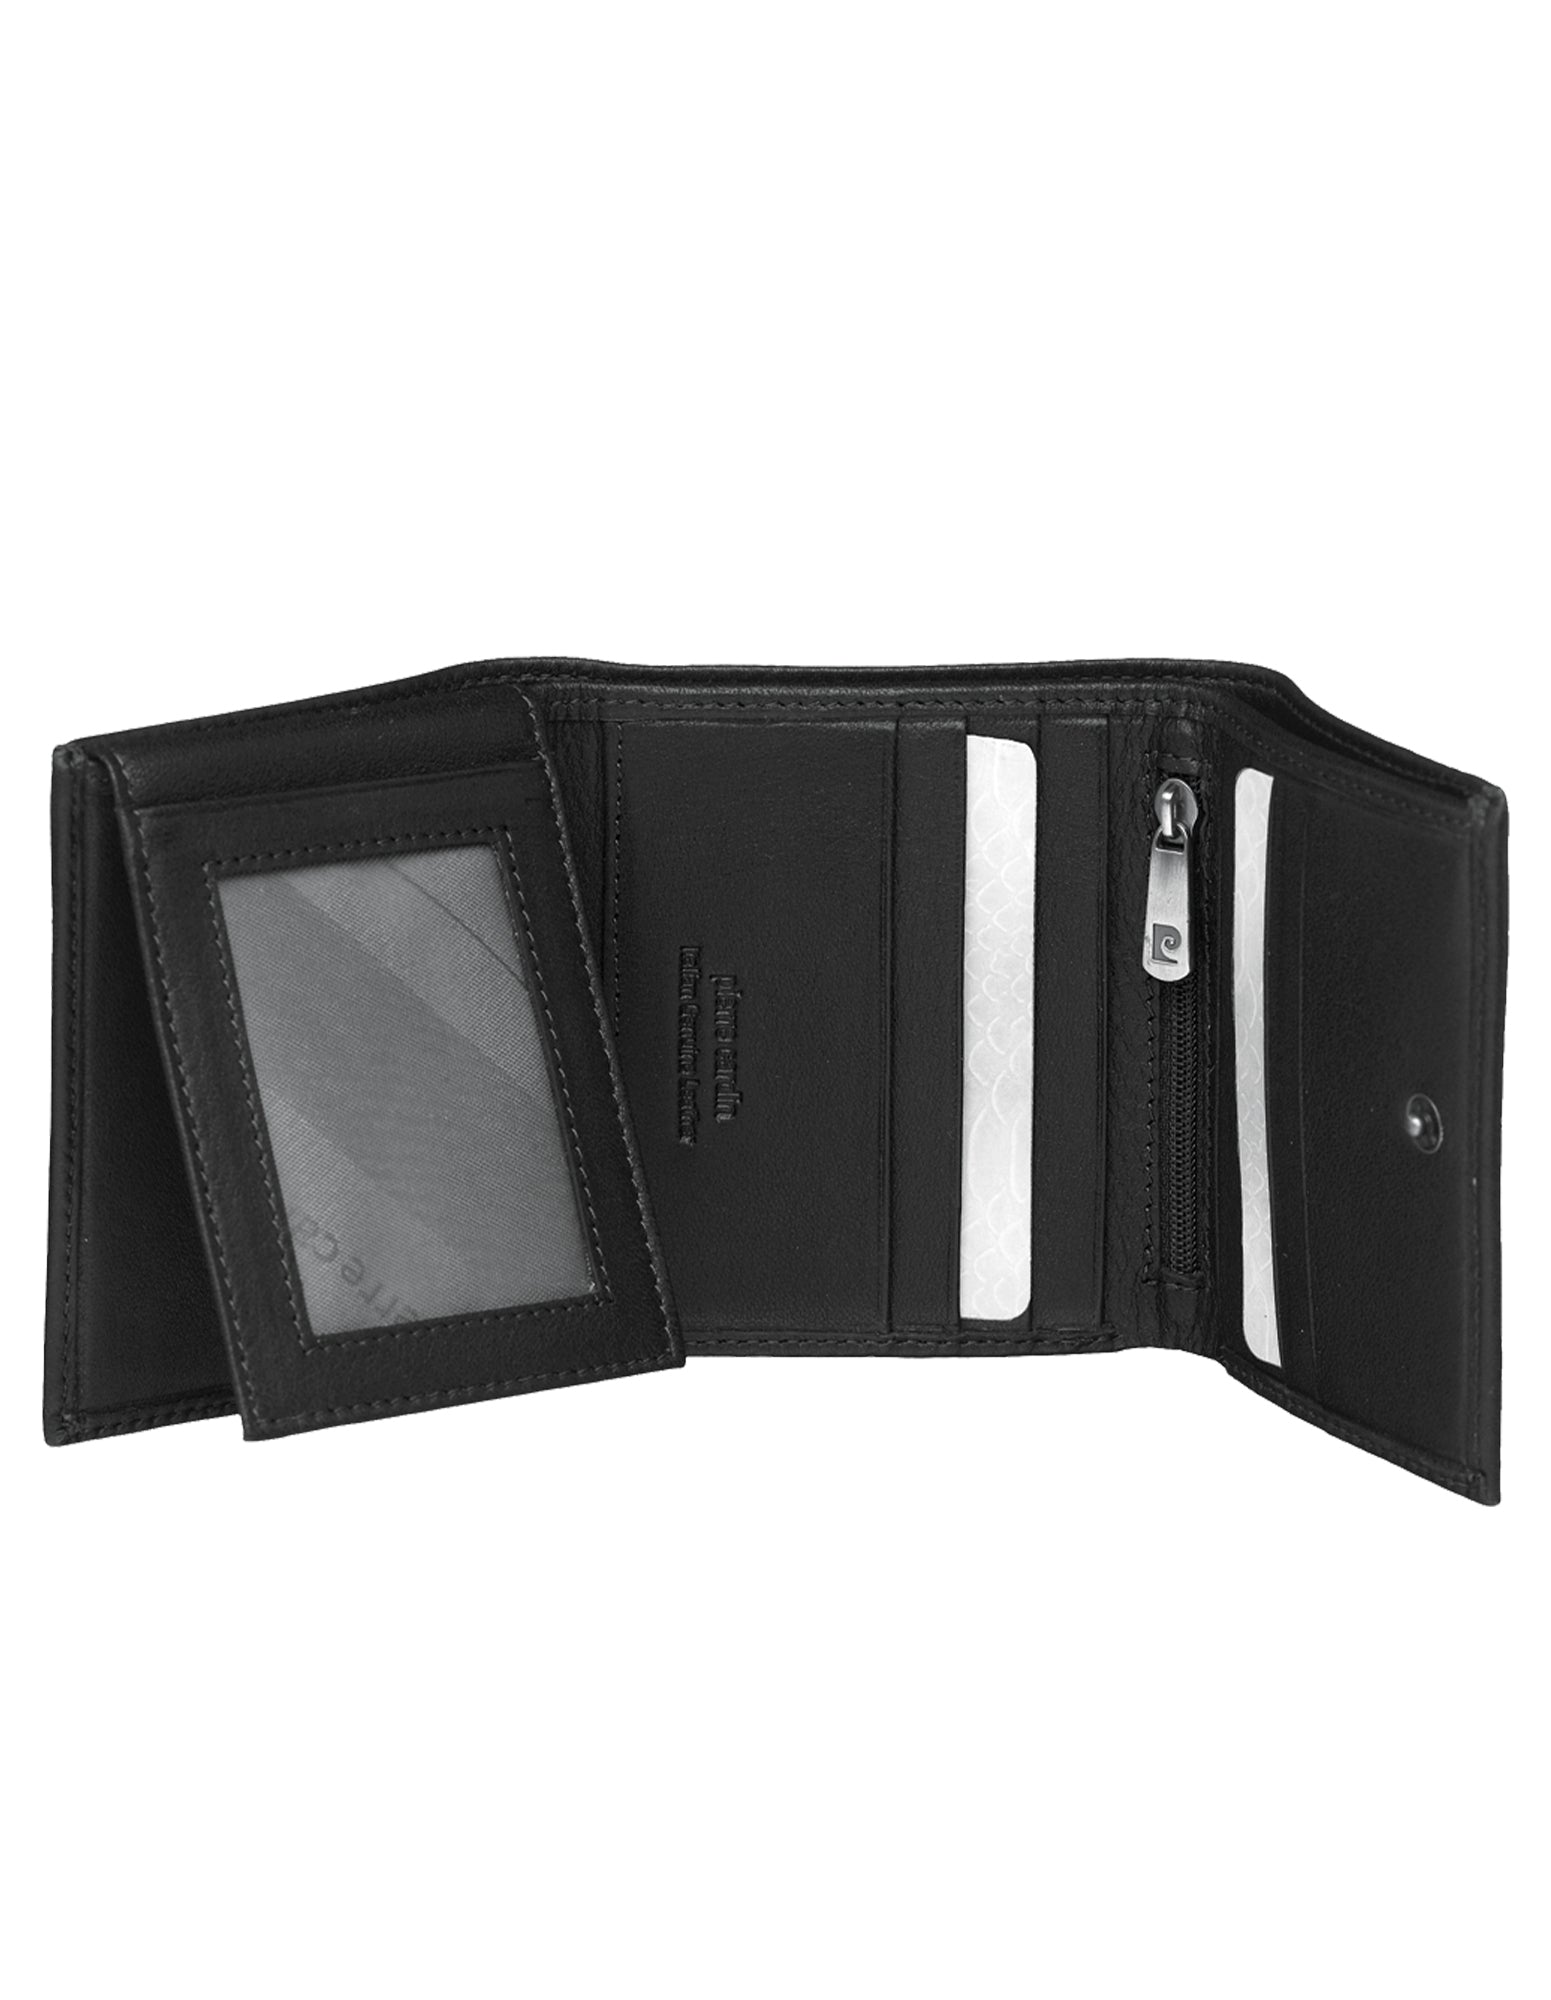 Pierre Cardin Leather Men's Tri-Fold Wallet in Black